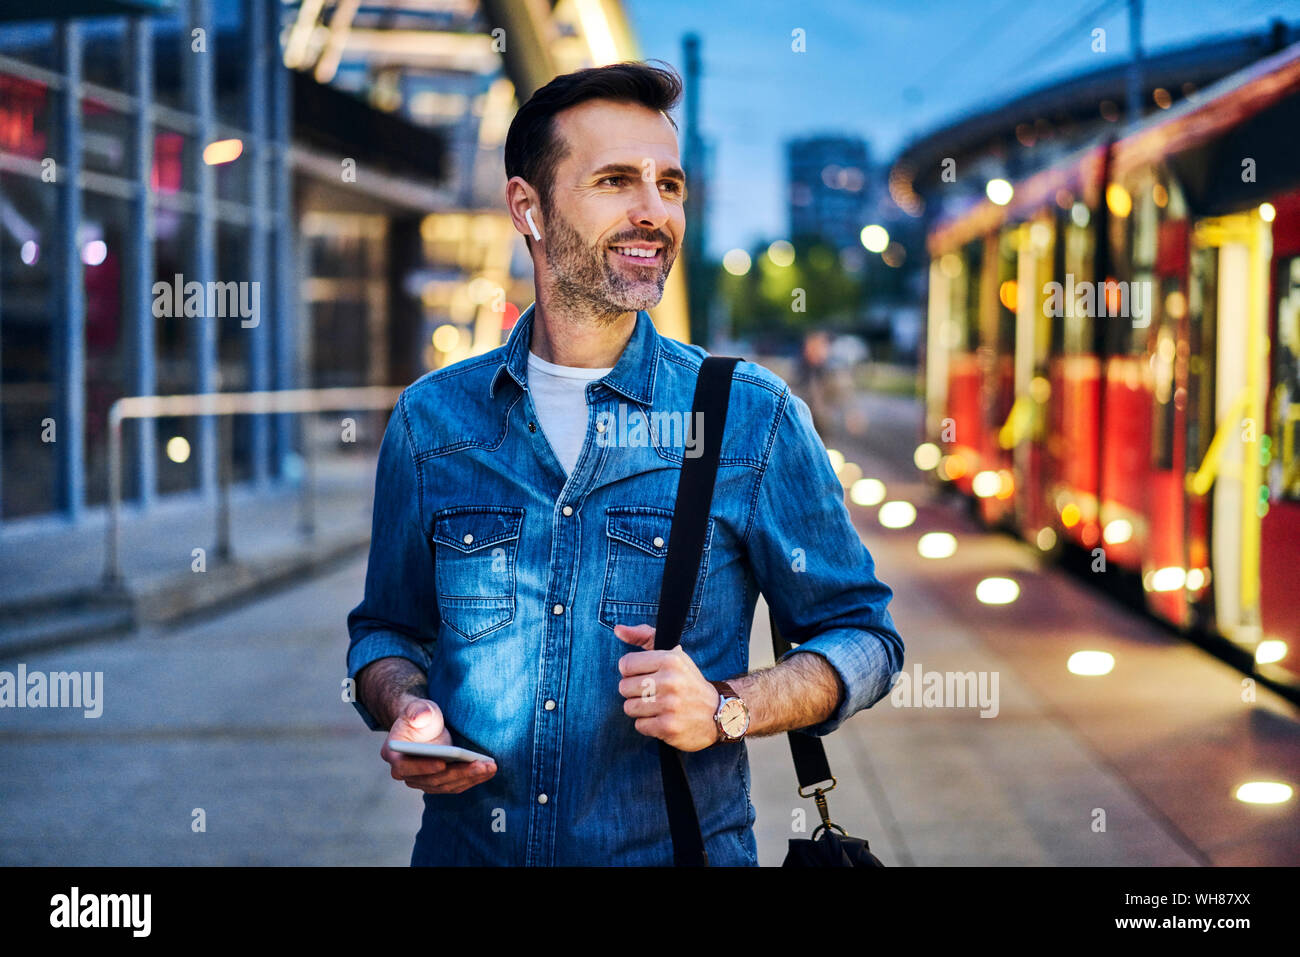 El hombre escucha música mientras espera el tranvía durante la noche conmutar después del trabajo Foto de stock